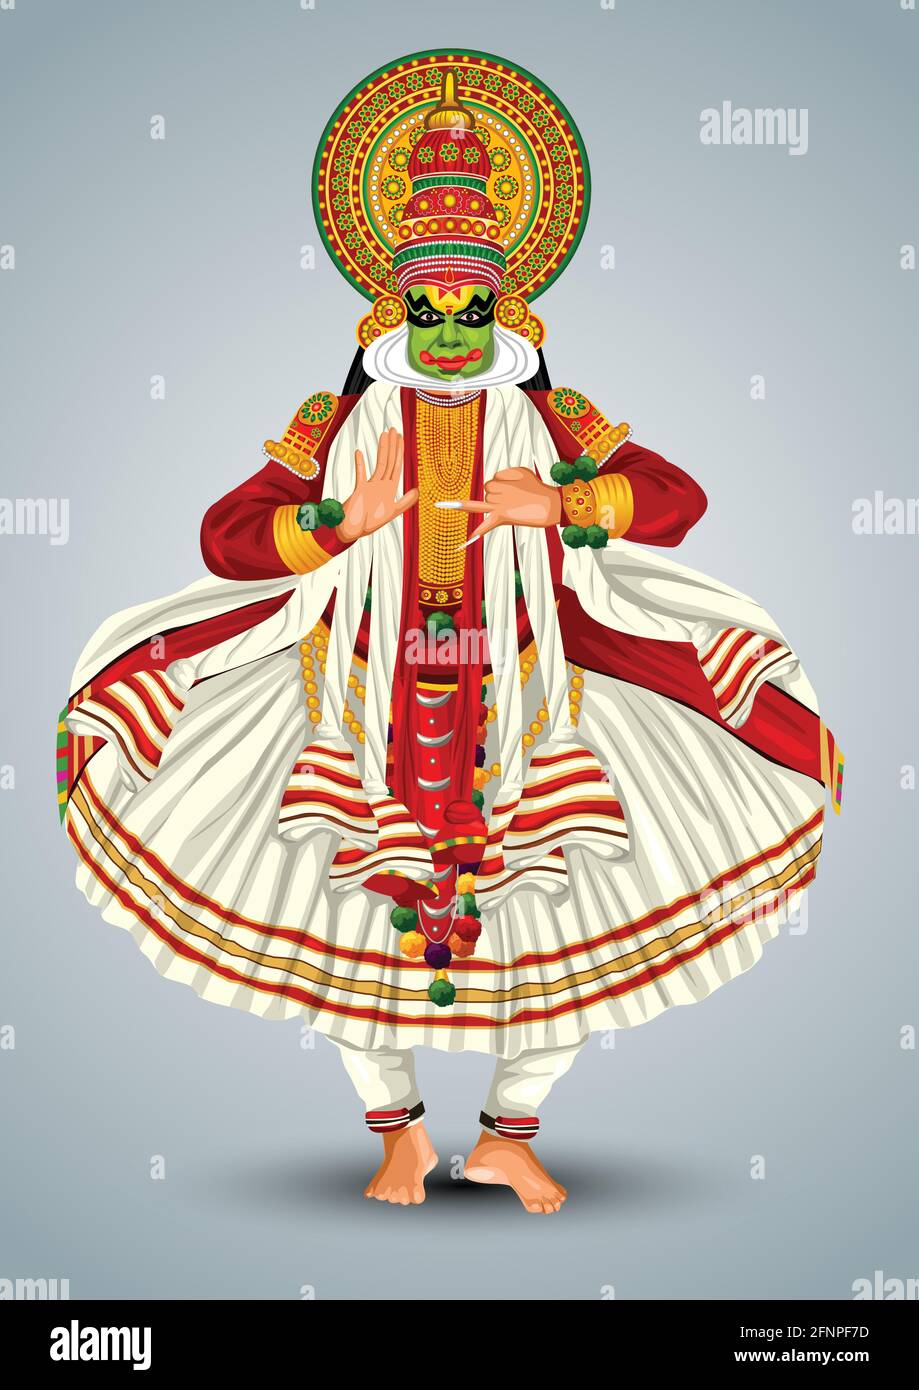 Kerala traditional folk dance kathakali full size vector illustration  design Stock Vector Image & Art - Alamy